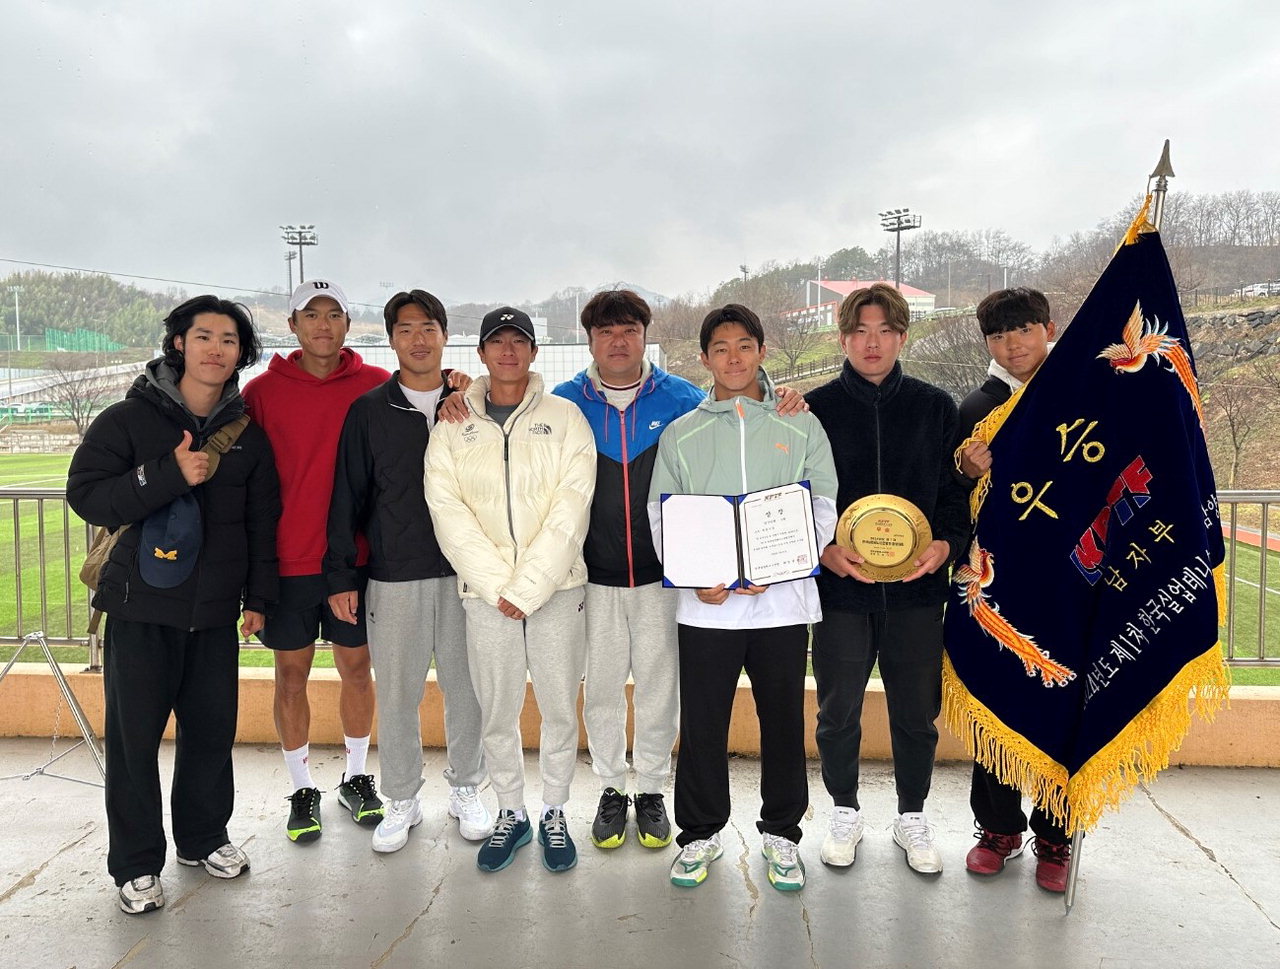 세종시 테니스팀이 지난 22일 경남 함양에서 열린 '제1차 한국실업테니스연맹전 및 전국종별테니스 함양대회'에서 남자단체전 우승을 차지하며 국내 최정상 팀임을 입증했다./세종시